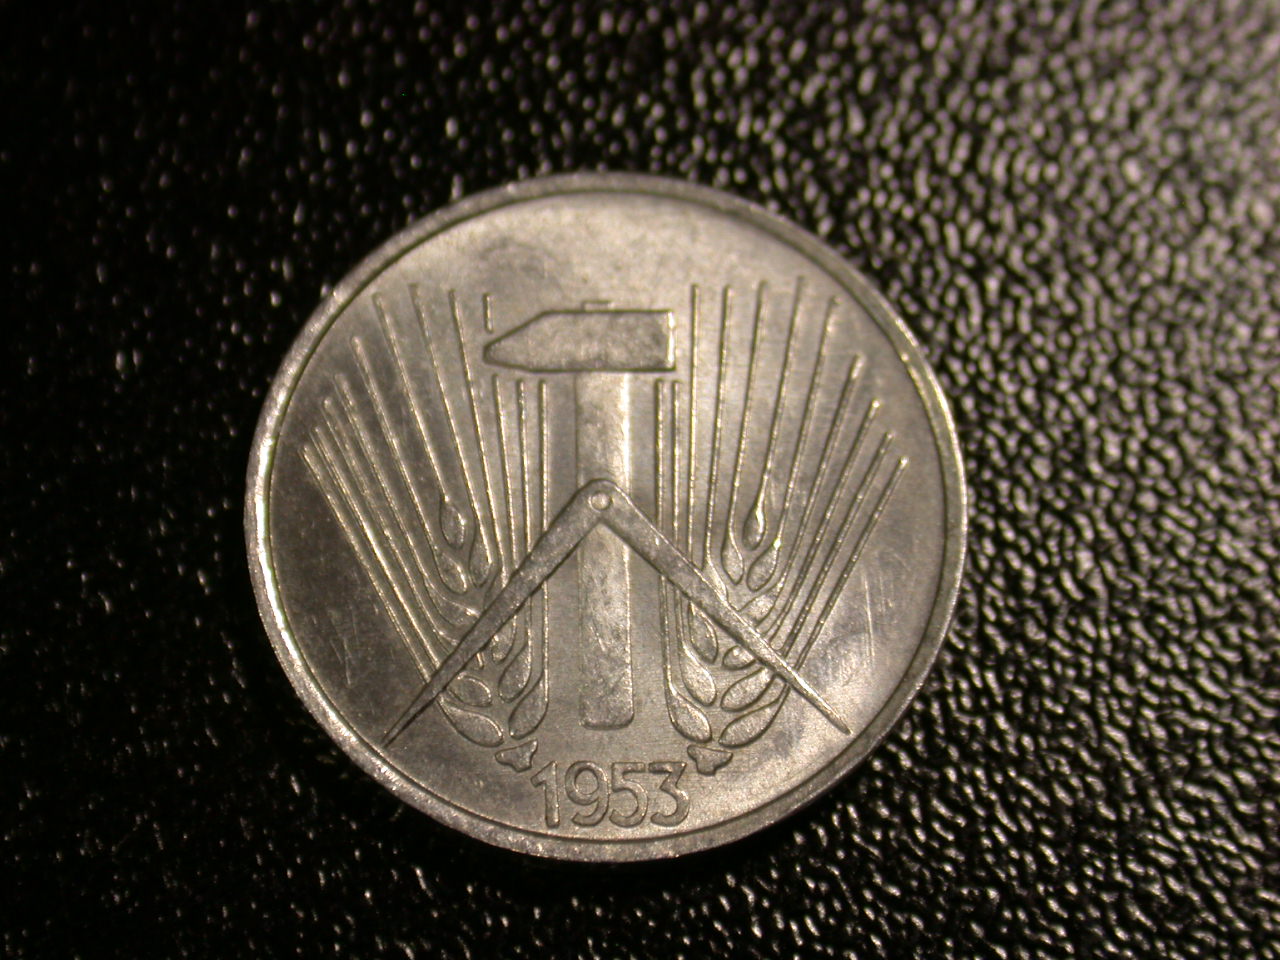  12045  DDR   1 Pfennig  1953 A  in vz-st   